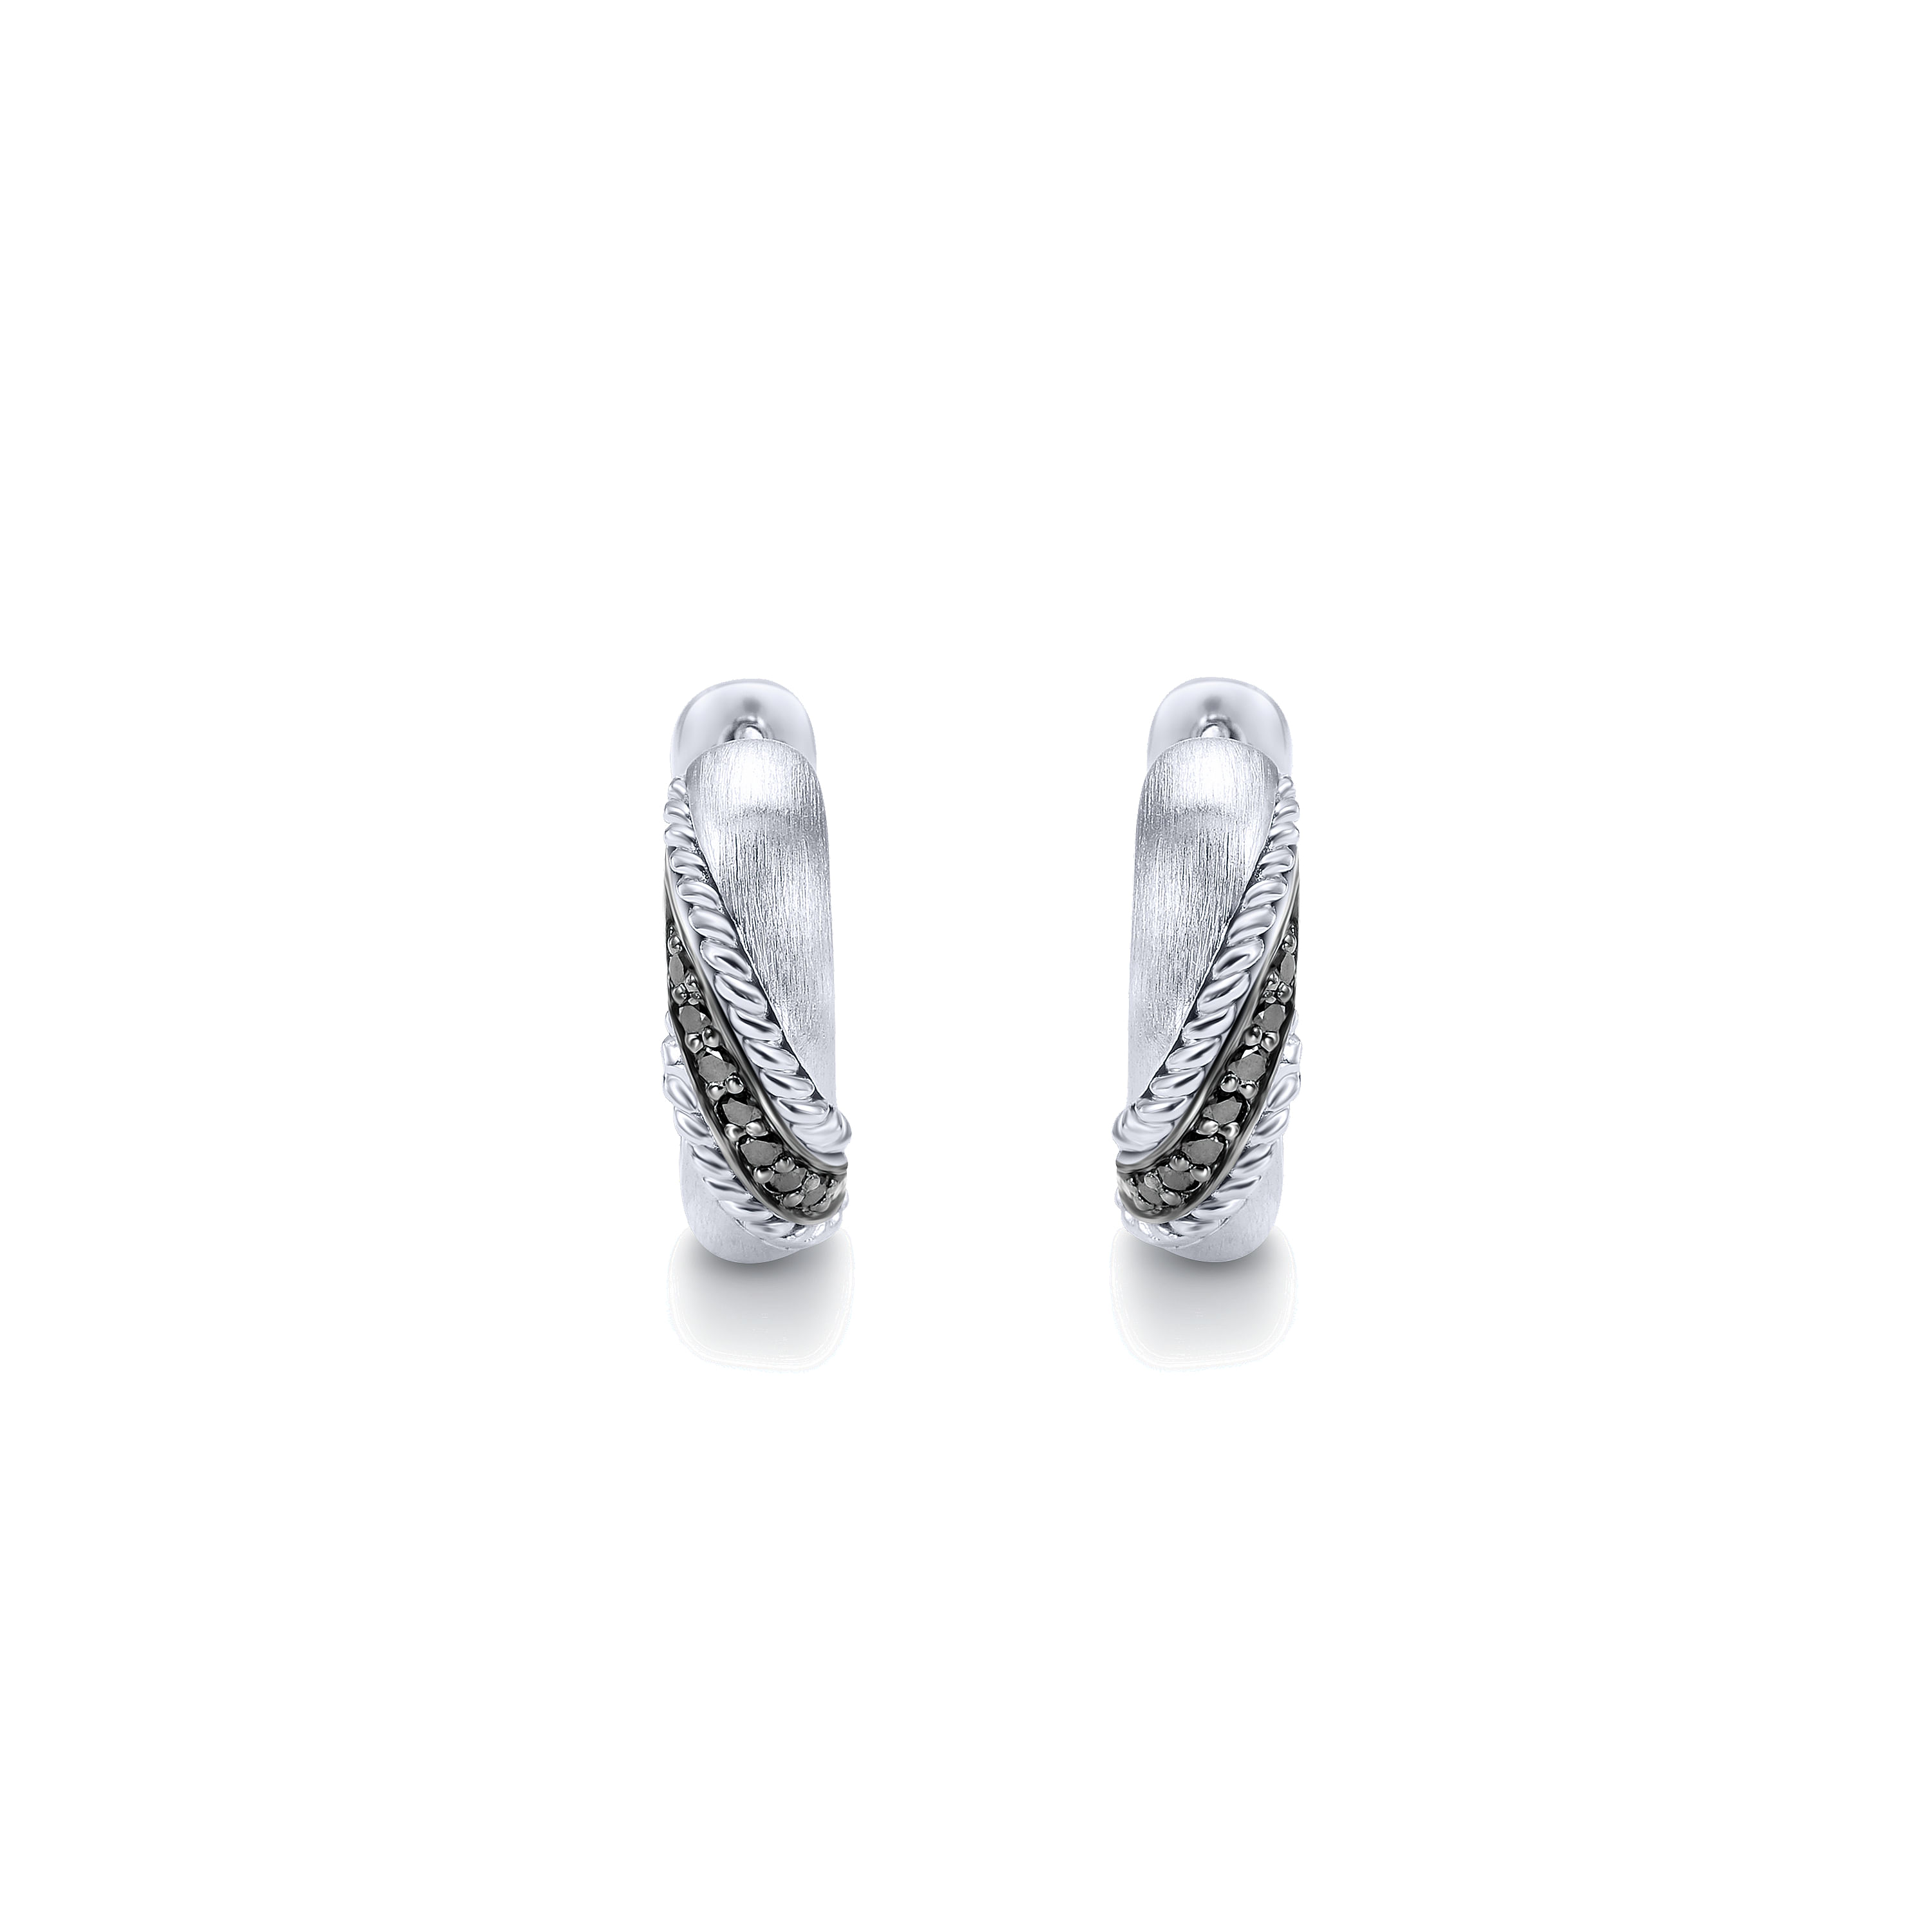 Silver 15mm Fashion Earrings